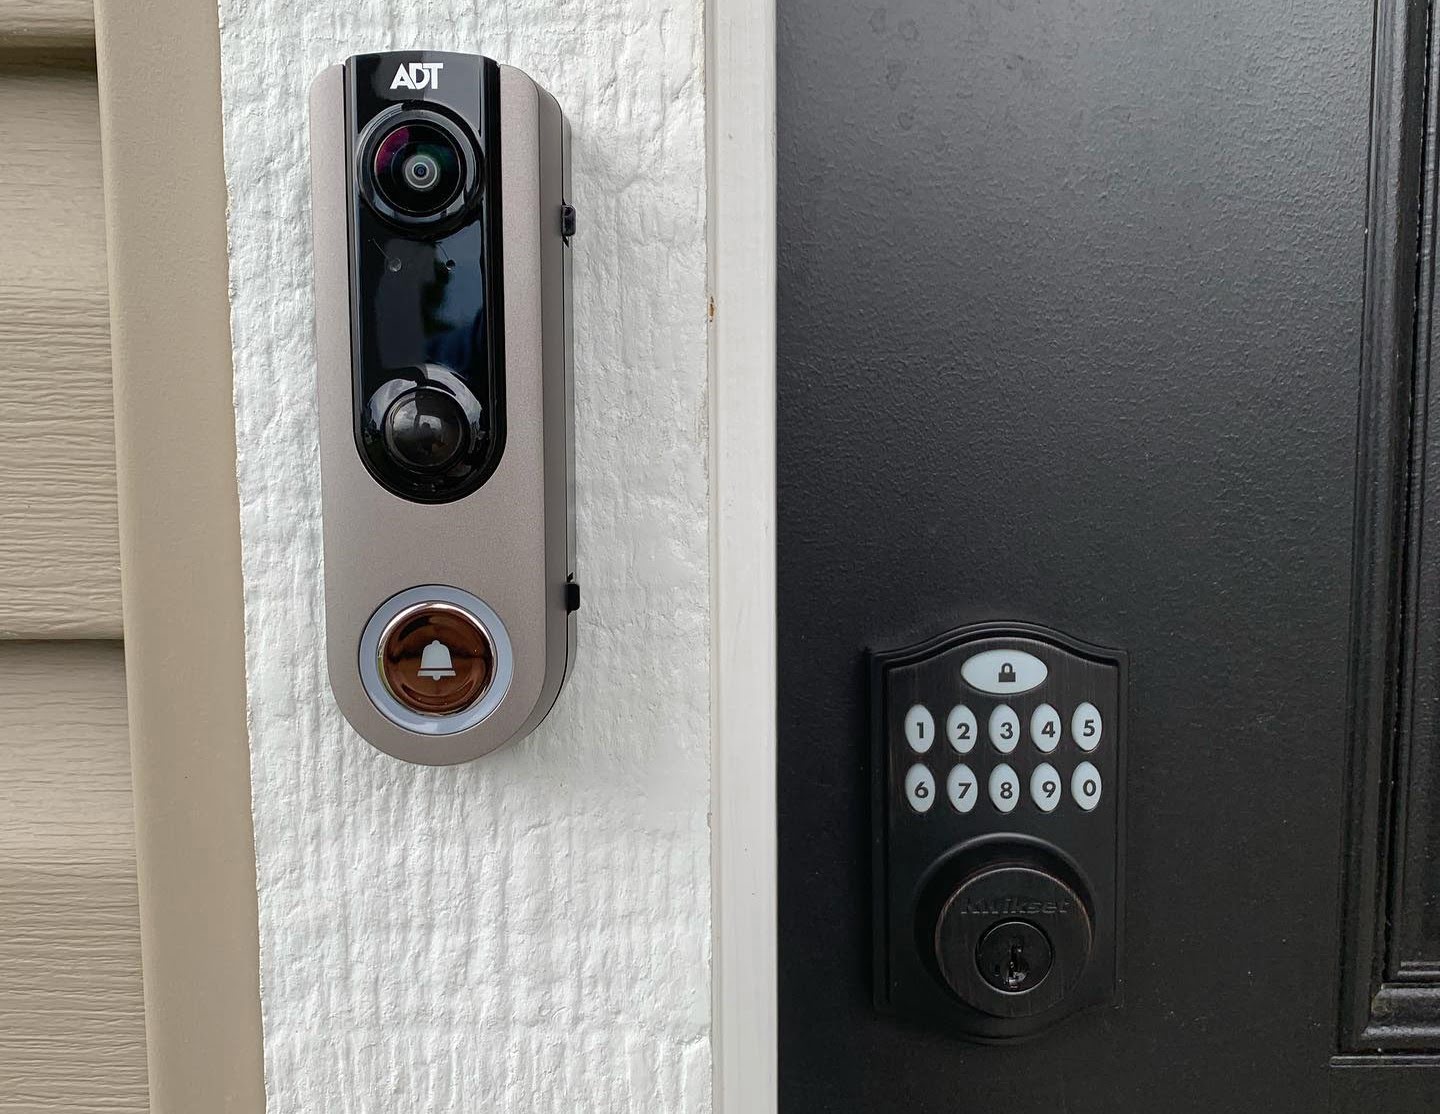 How Do I Change The Code On My Adt Door Lock